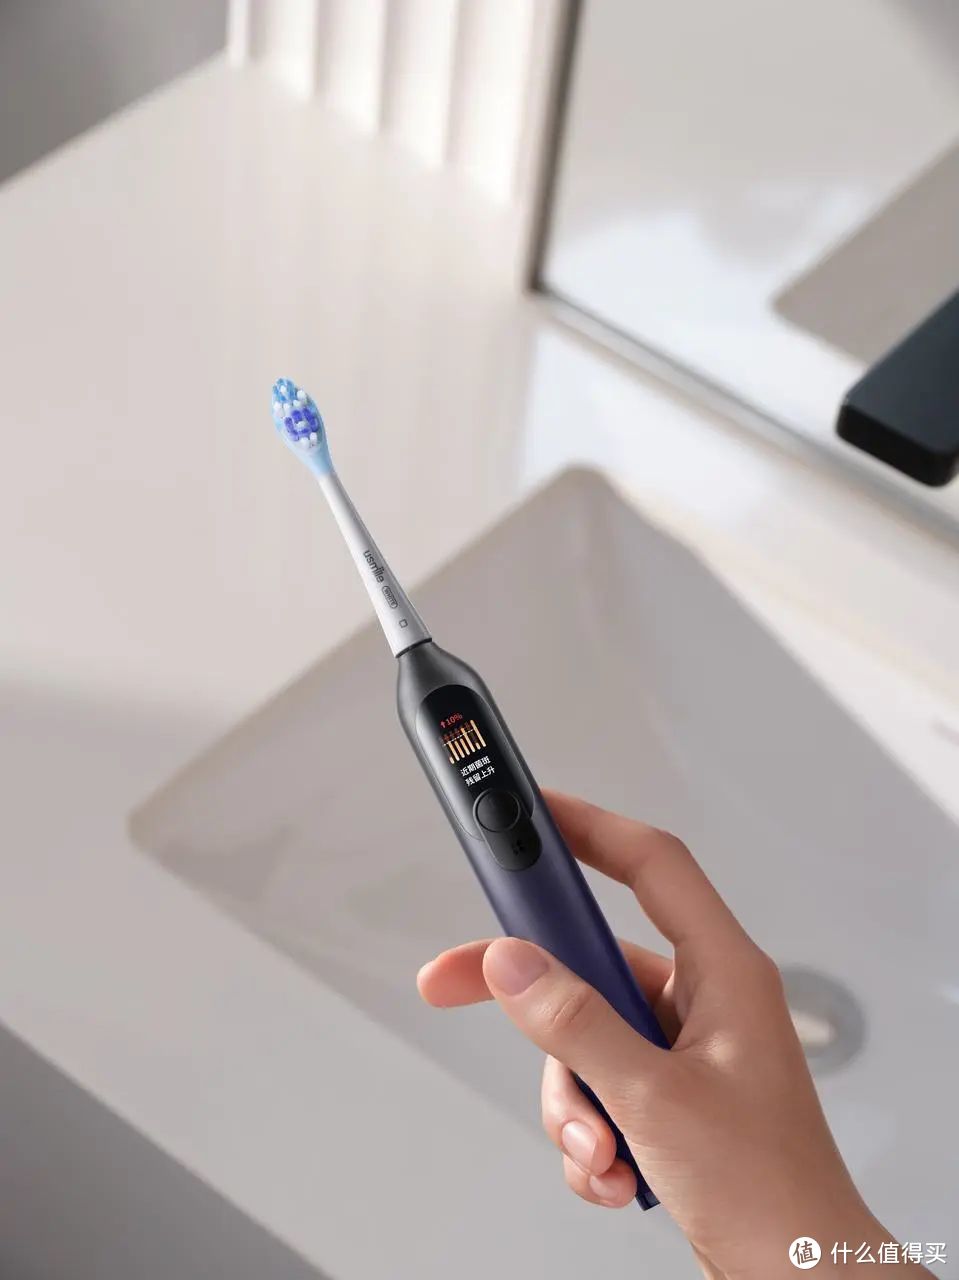 基于特定时间段内的刷牙习惯和数据报告，还会触发专属清洁模式